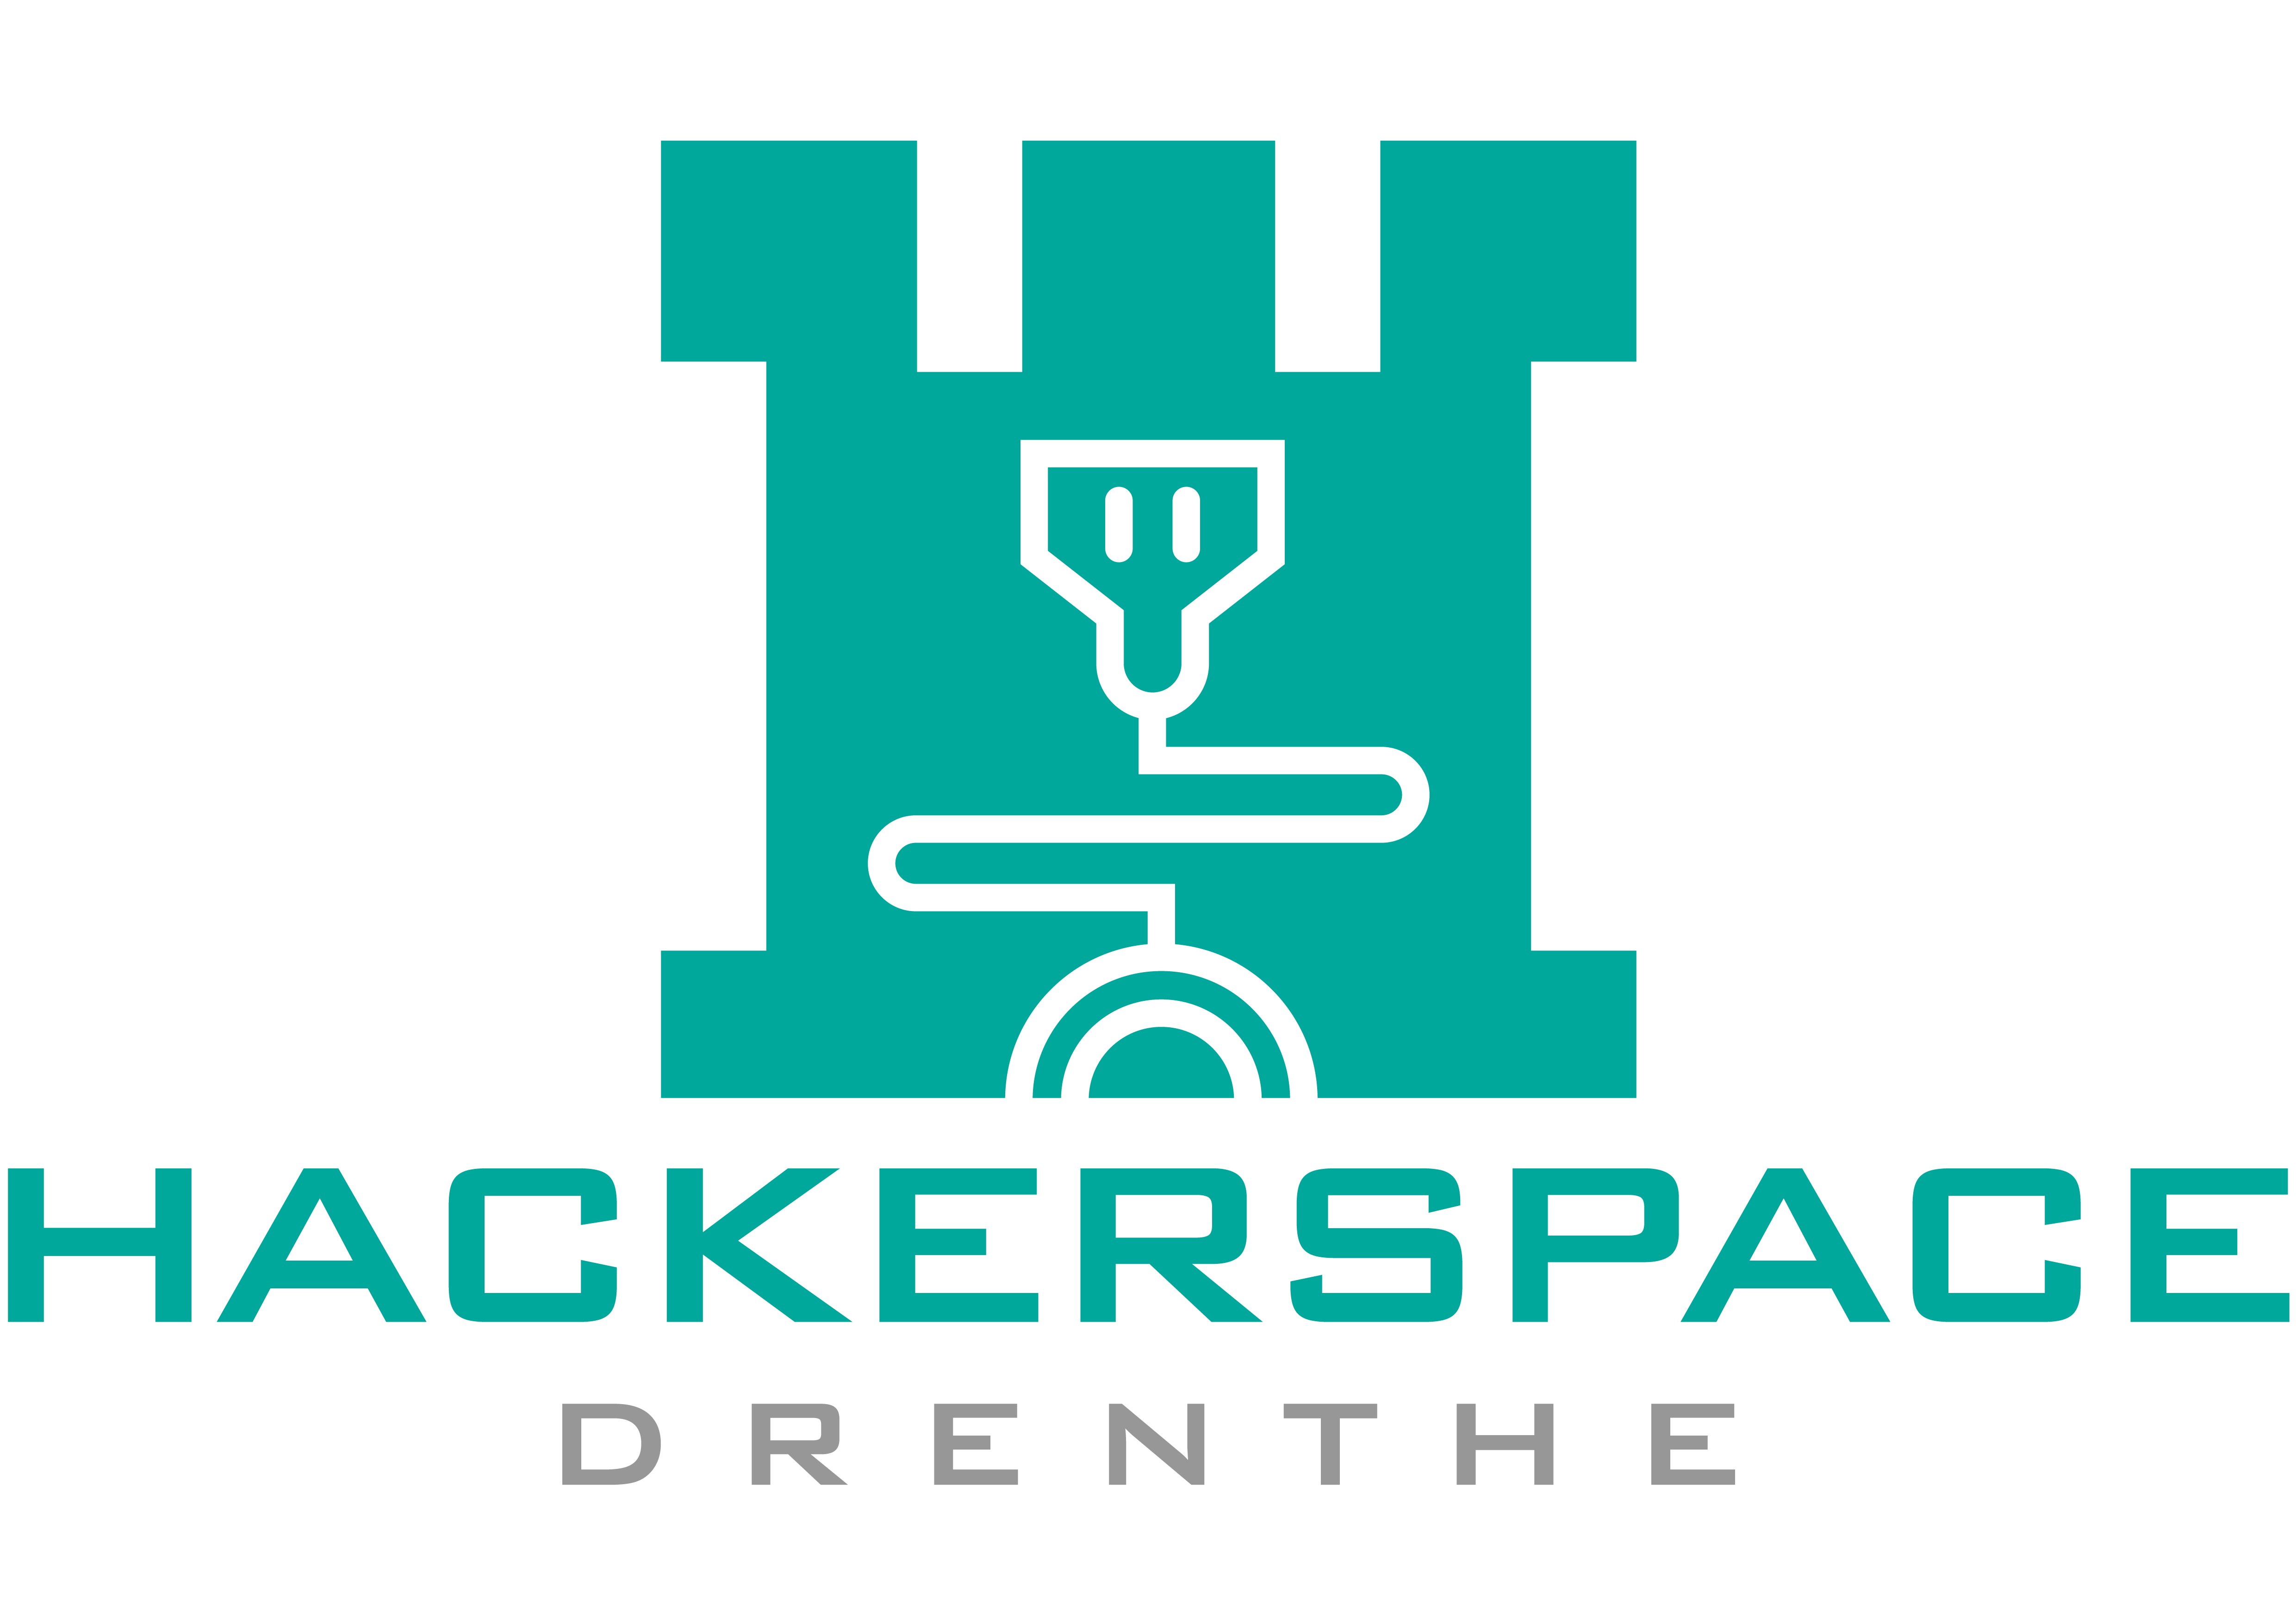 Bestand:4018 Hackerspace Drenthe 02.png